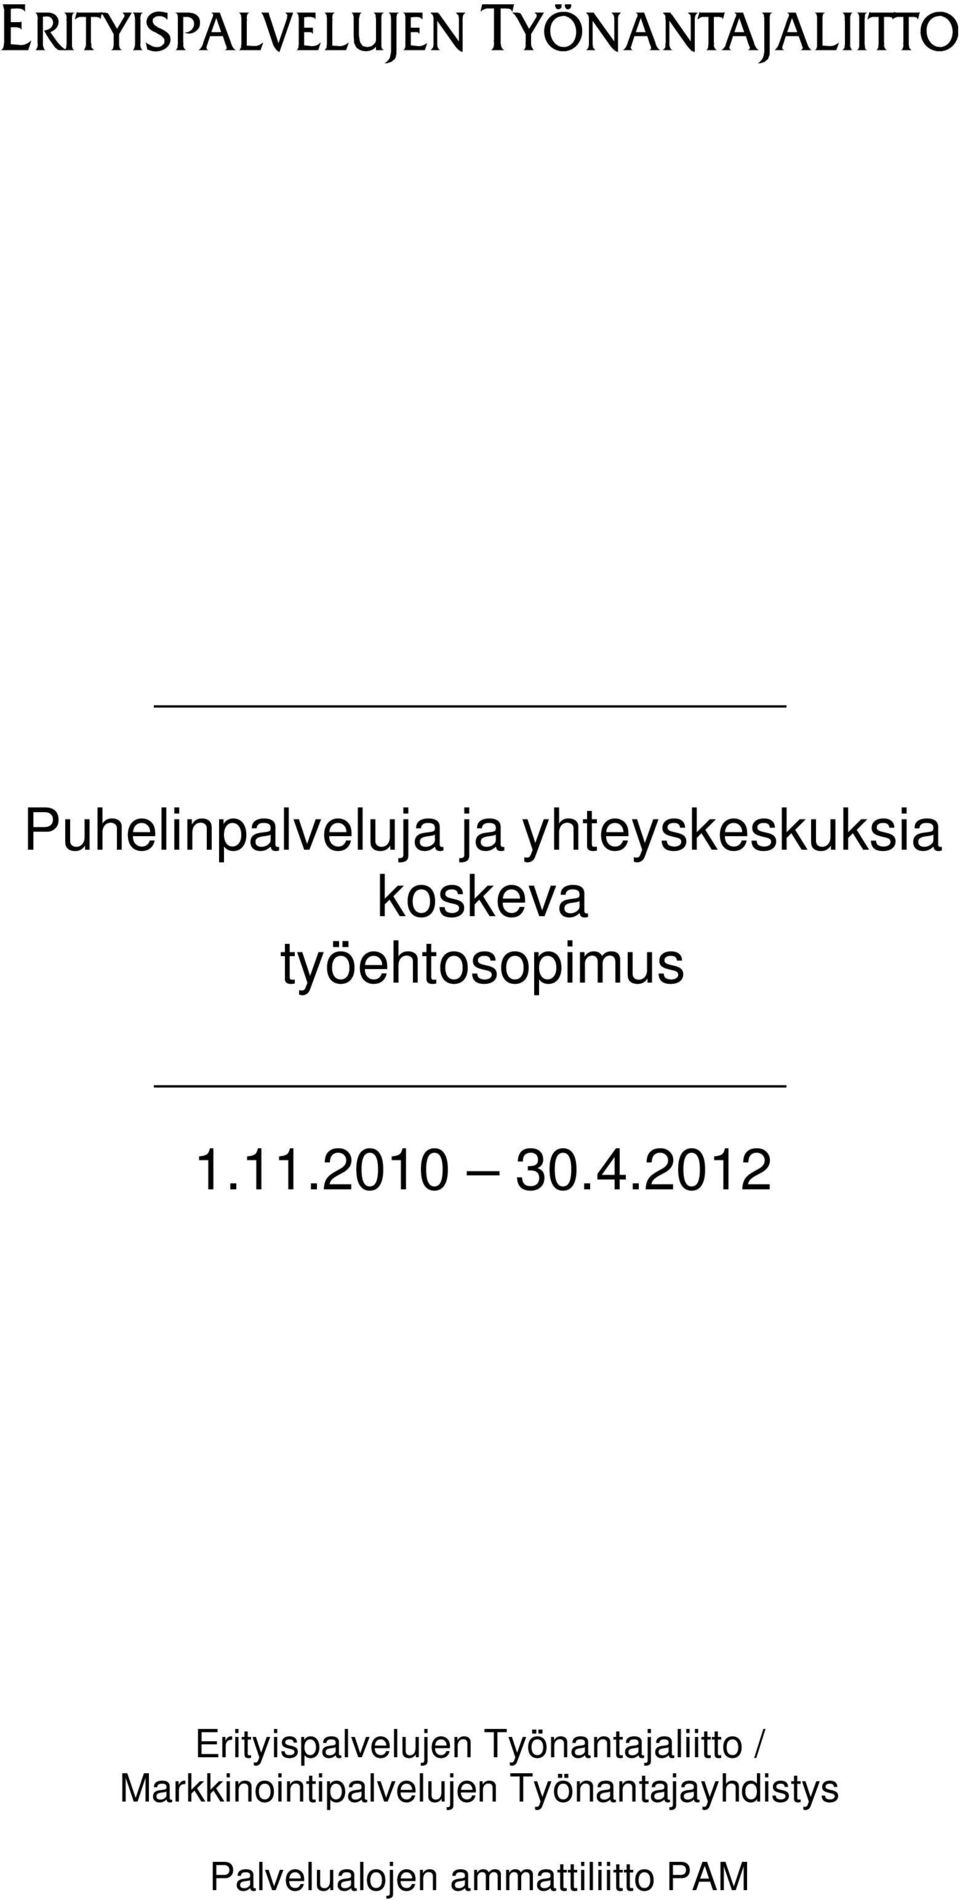 2012 Erityispalvelujen Työnantajaliitto /